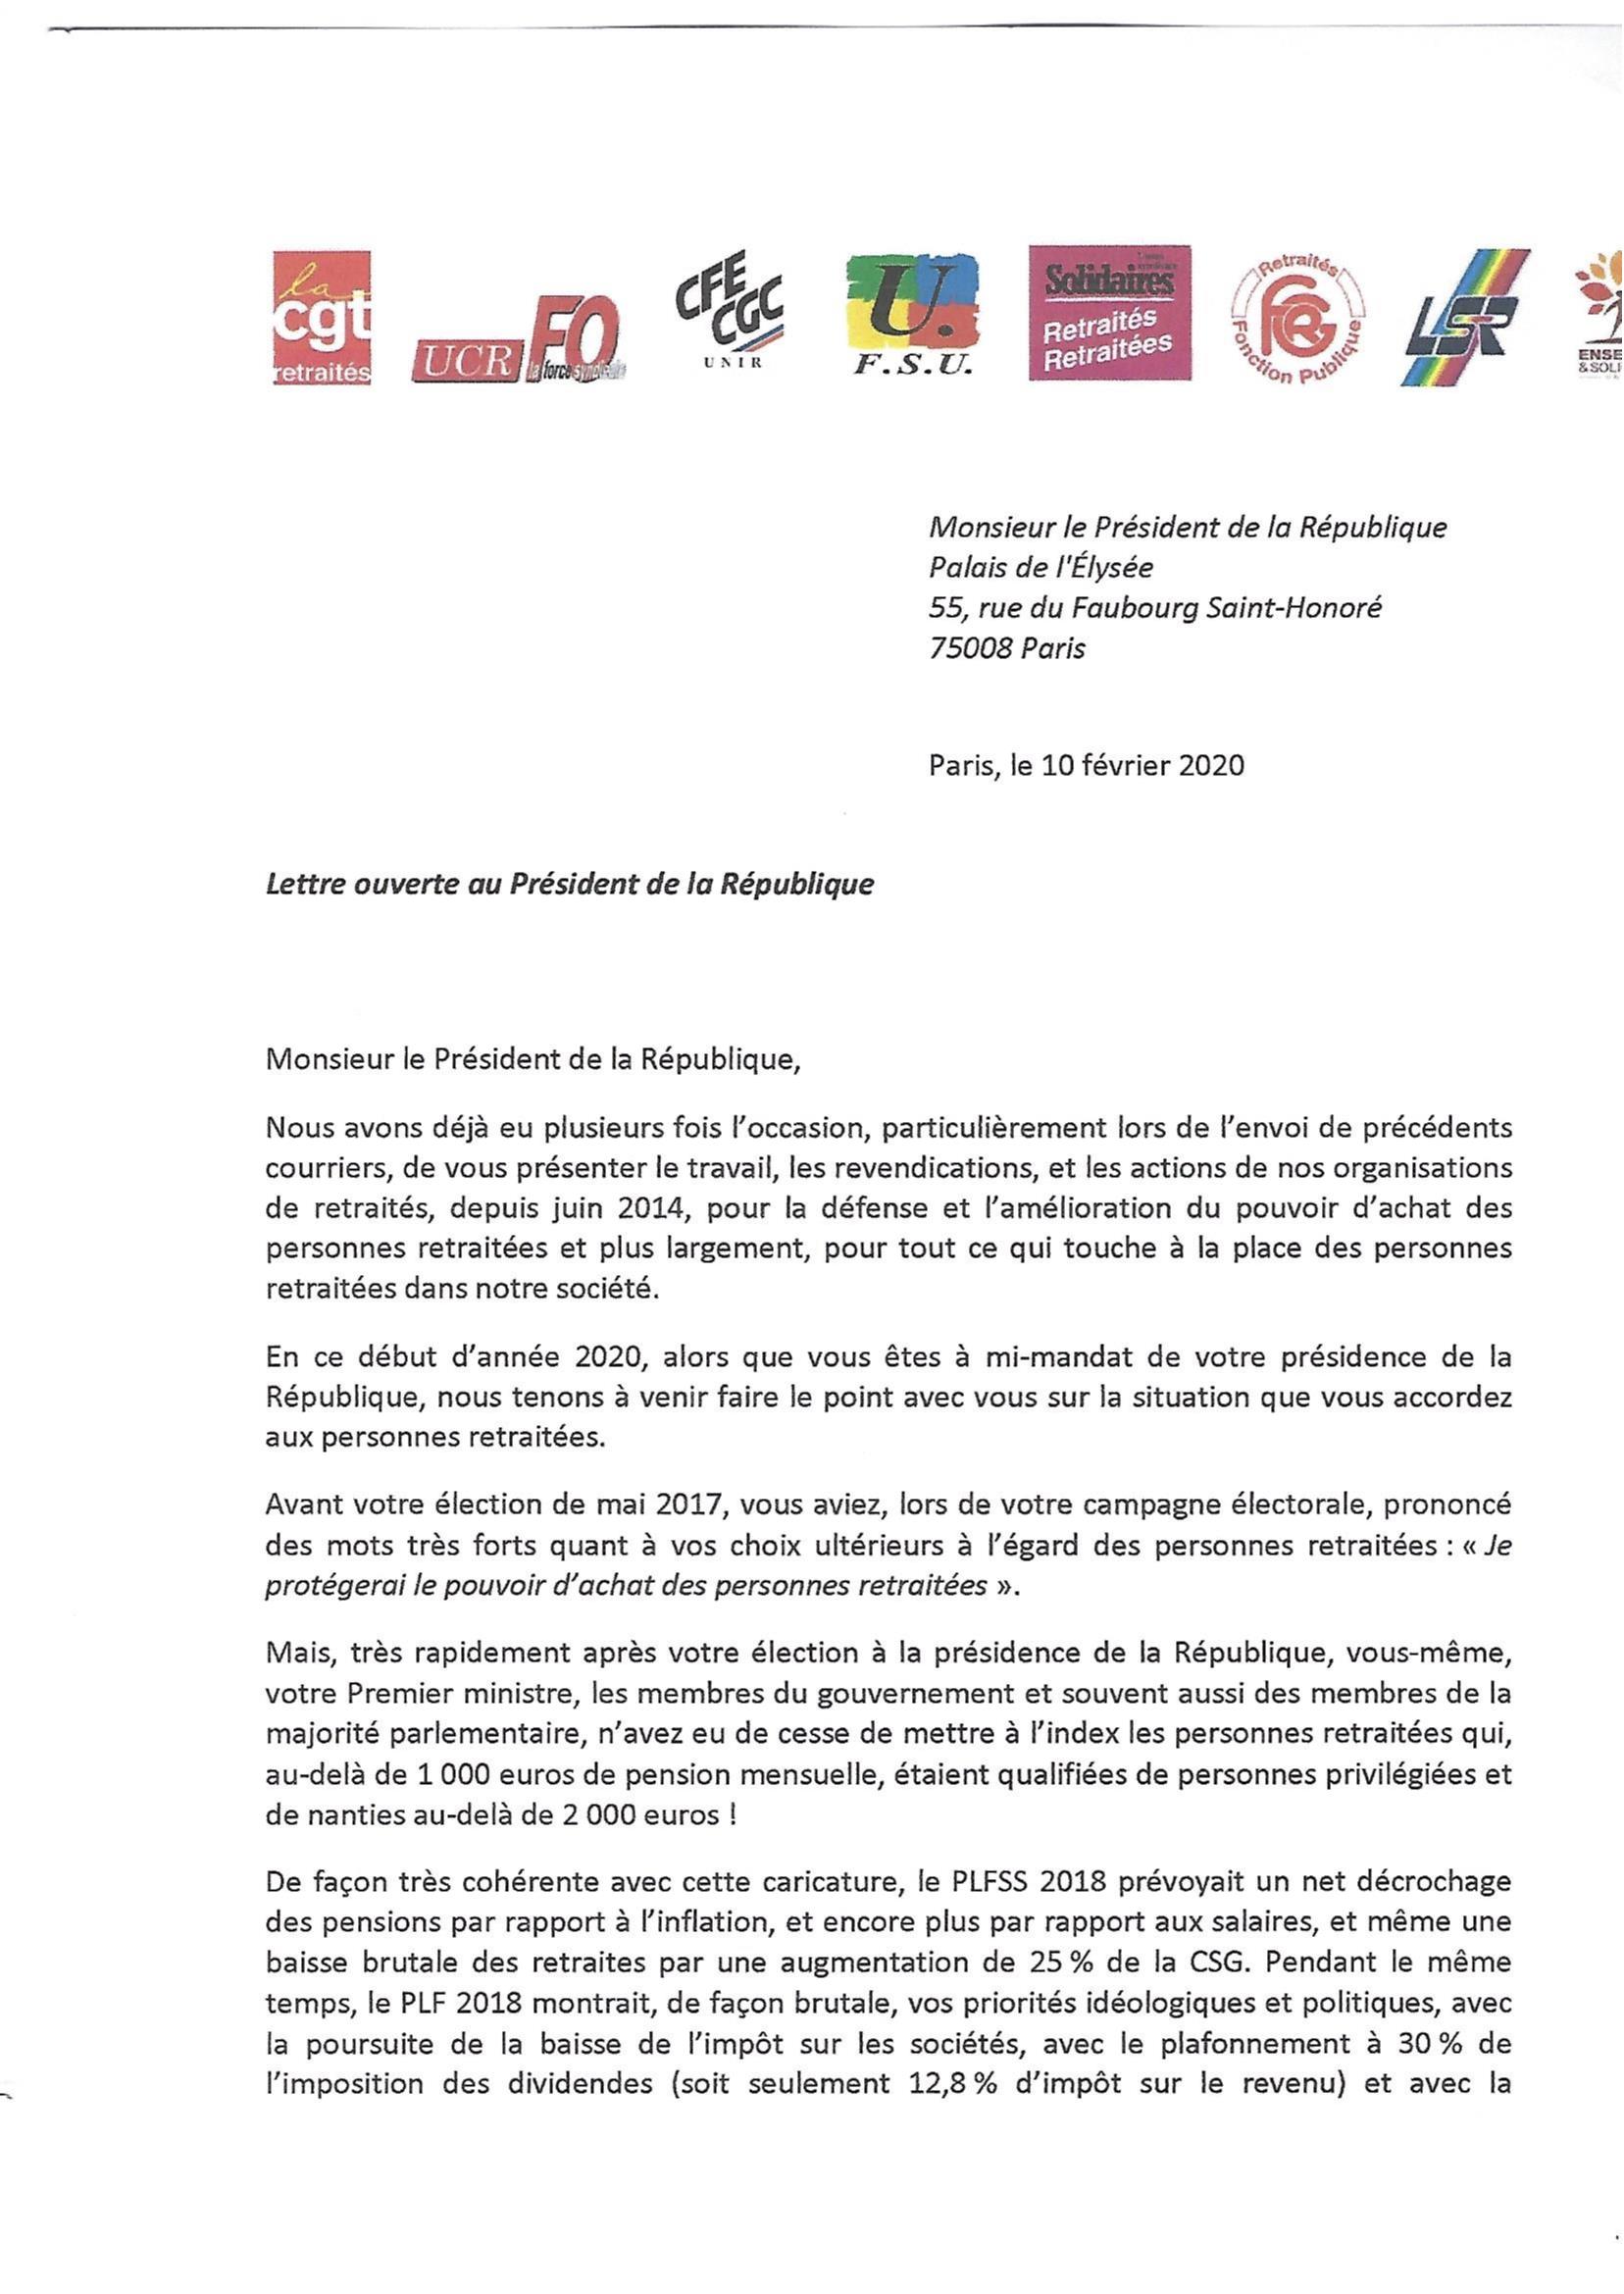 Inter lettre 2020 lettre des 8 organisations de retraités envoyée au Président de la République